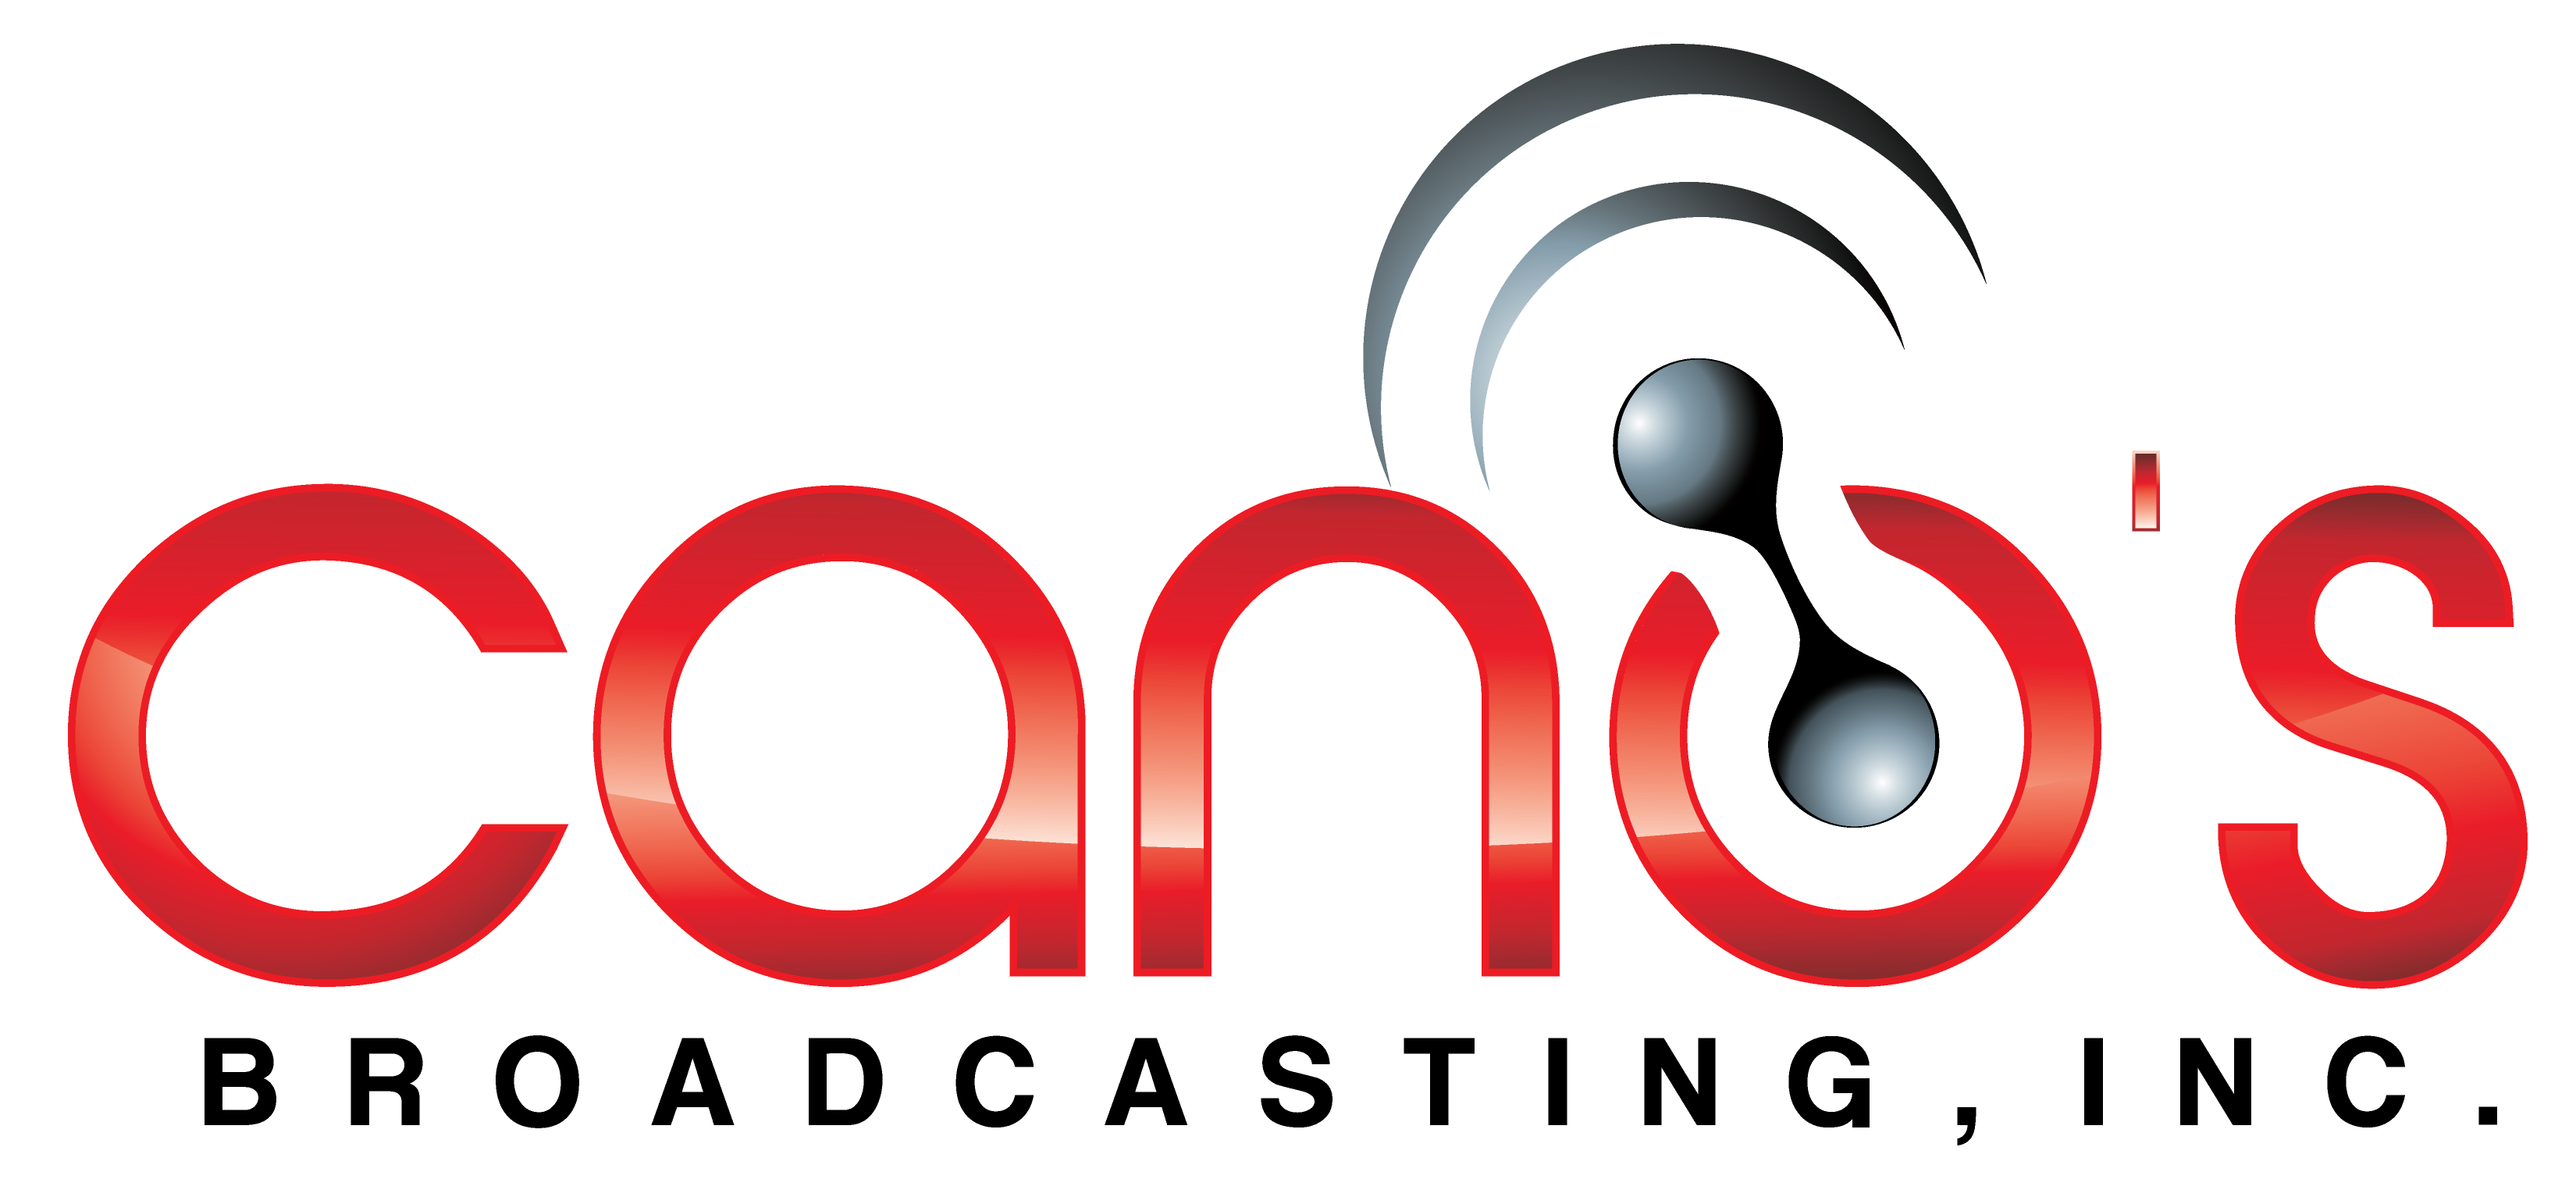 Cano's Broadcasting I LLC